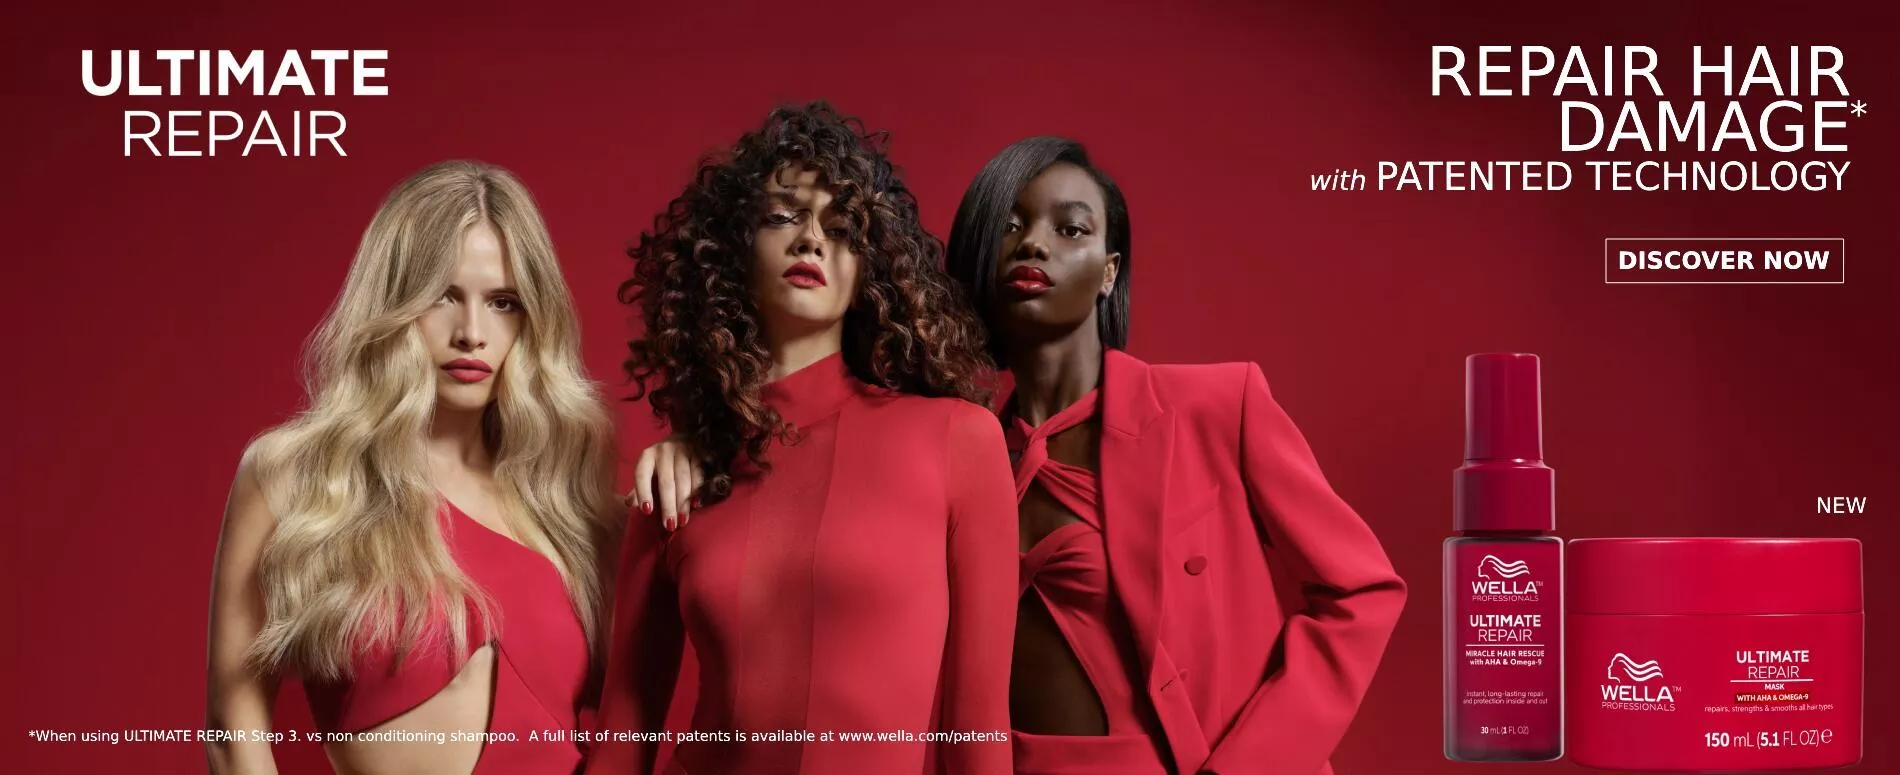 Imagen de 3 modelos vestidas de rojo junto a un bote rojo de Mascarilla Ultimate Repair para cabello dañado de Wella Professionals